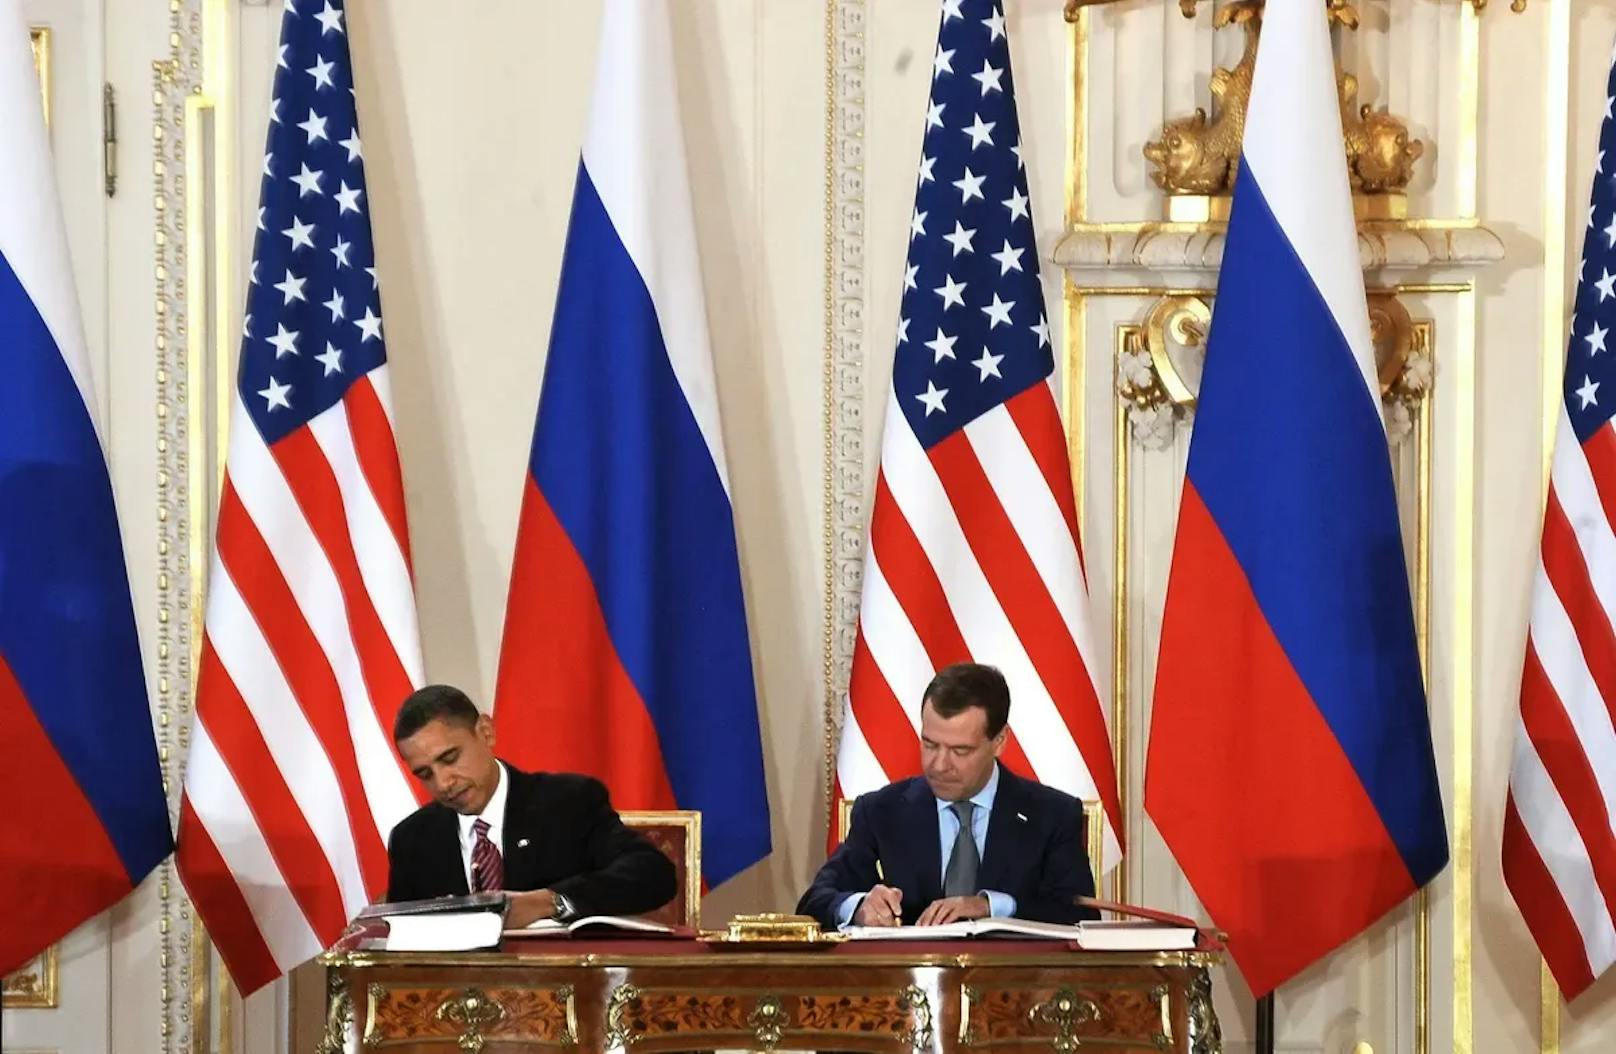 2010 wurde das Abkommen von Barack Obama und Dmitry Medvedev unterzeichnet. Es sieht vor, dass Militärstandorte in beiden Ländern inspiziert werden.